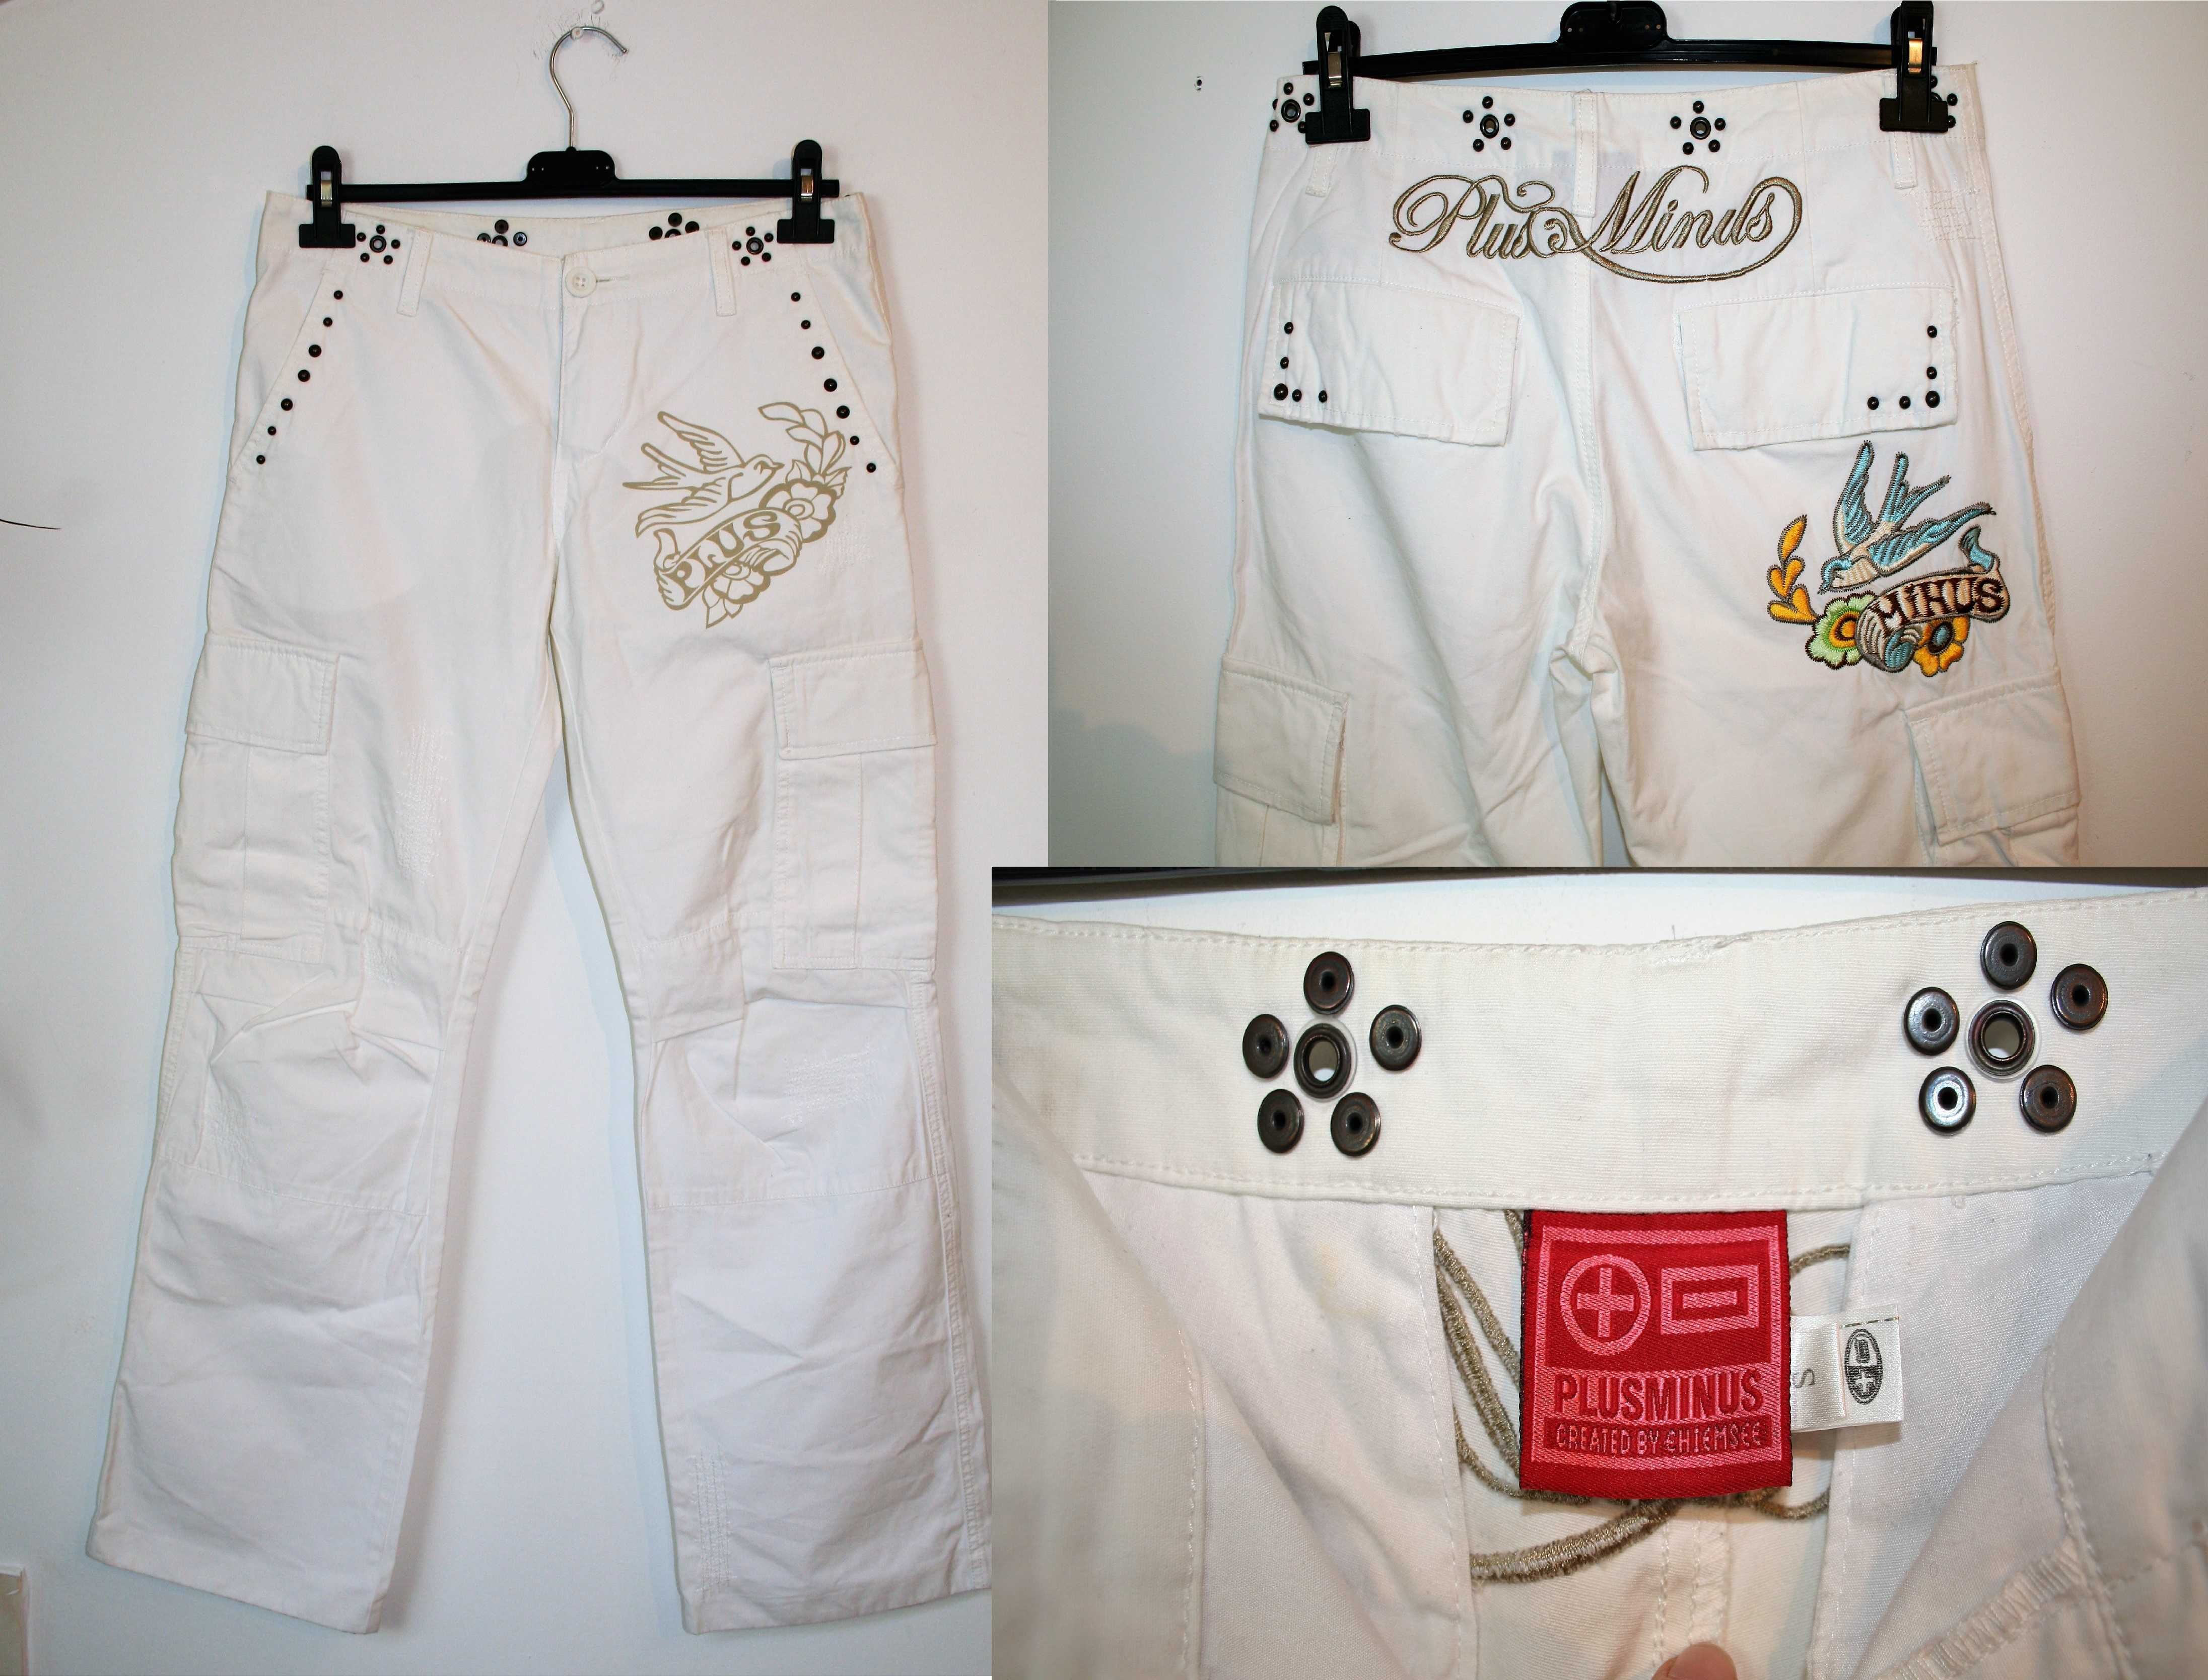 Białe spodnie damskie /PLUSMINUS/spodnie haftowane /bawełna rz: S